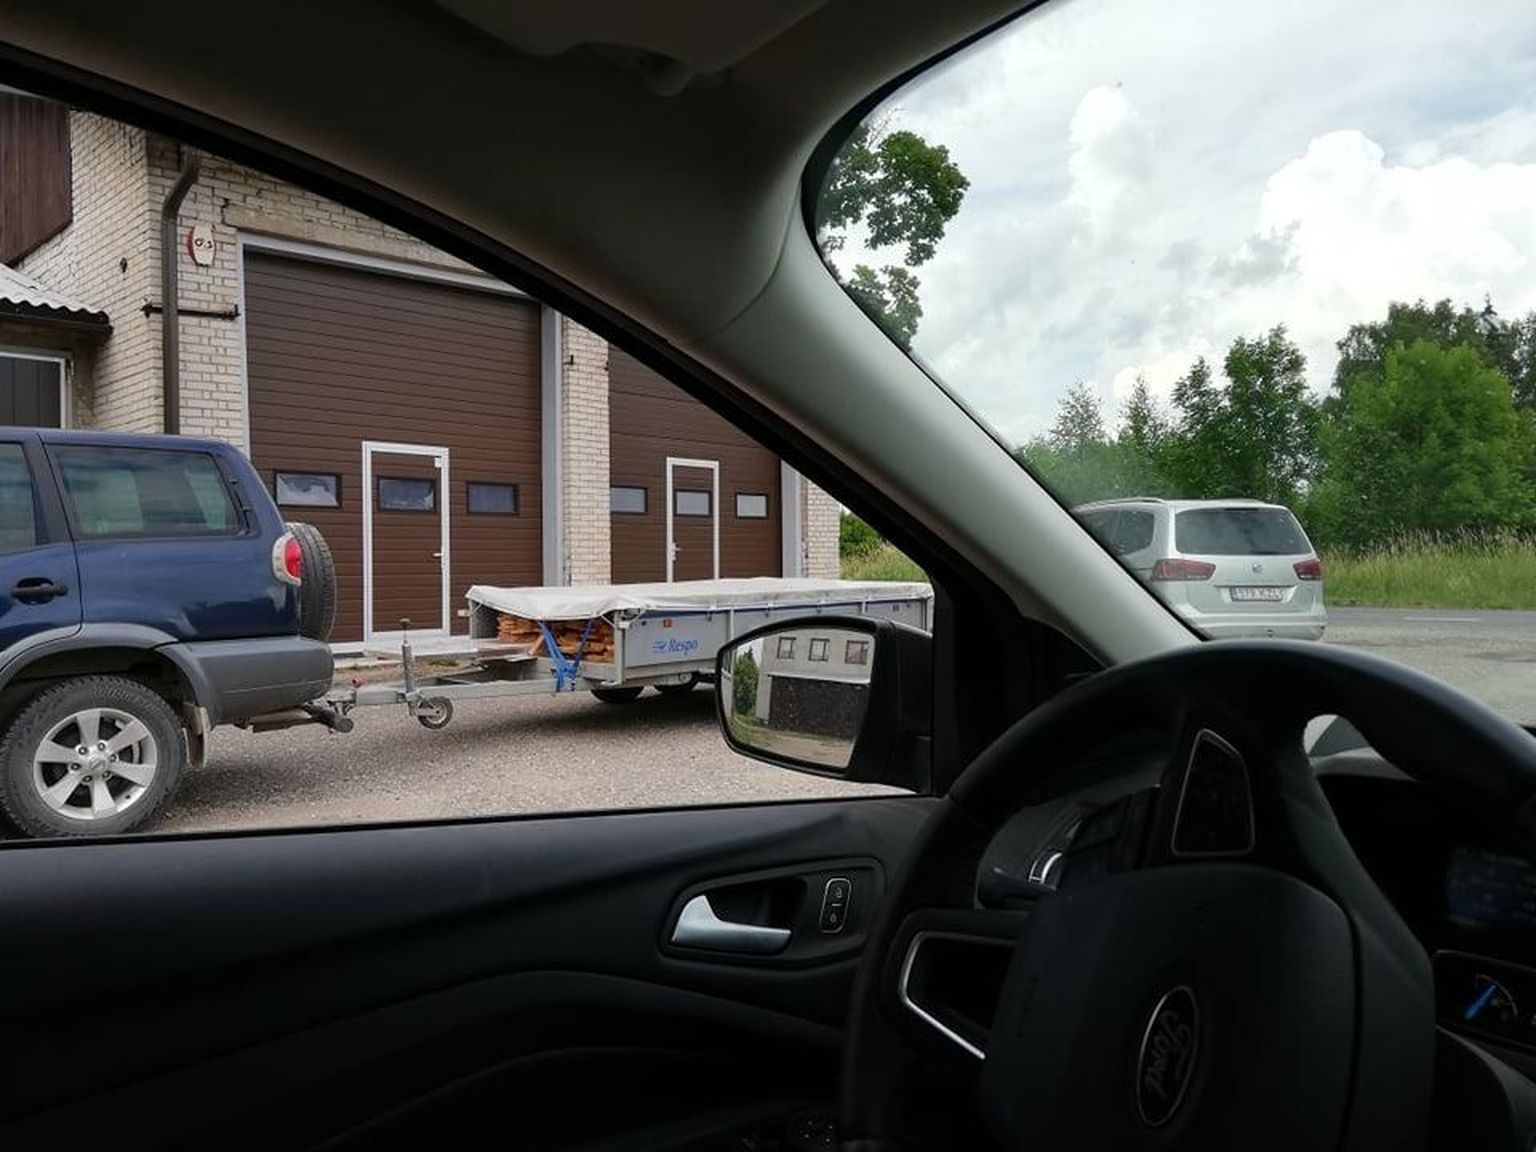 Автомобиль директора центра профессионального образования Вырумаа Танеля Линнуса с прицепом, набитым столами, у школьных гаражей.